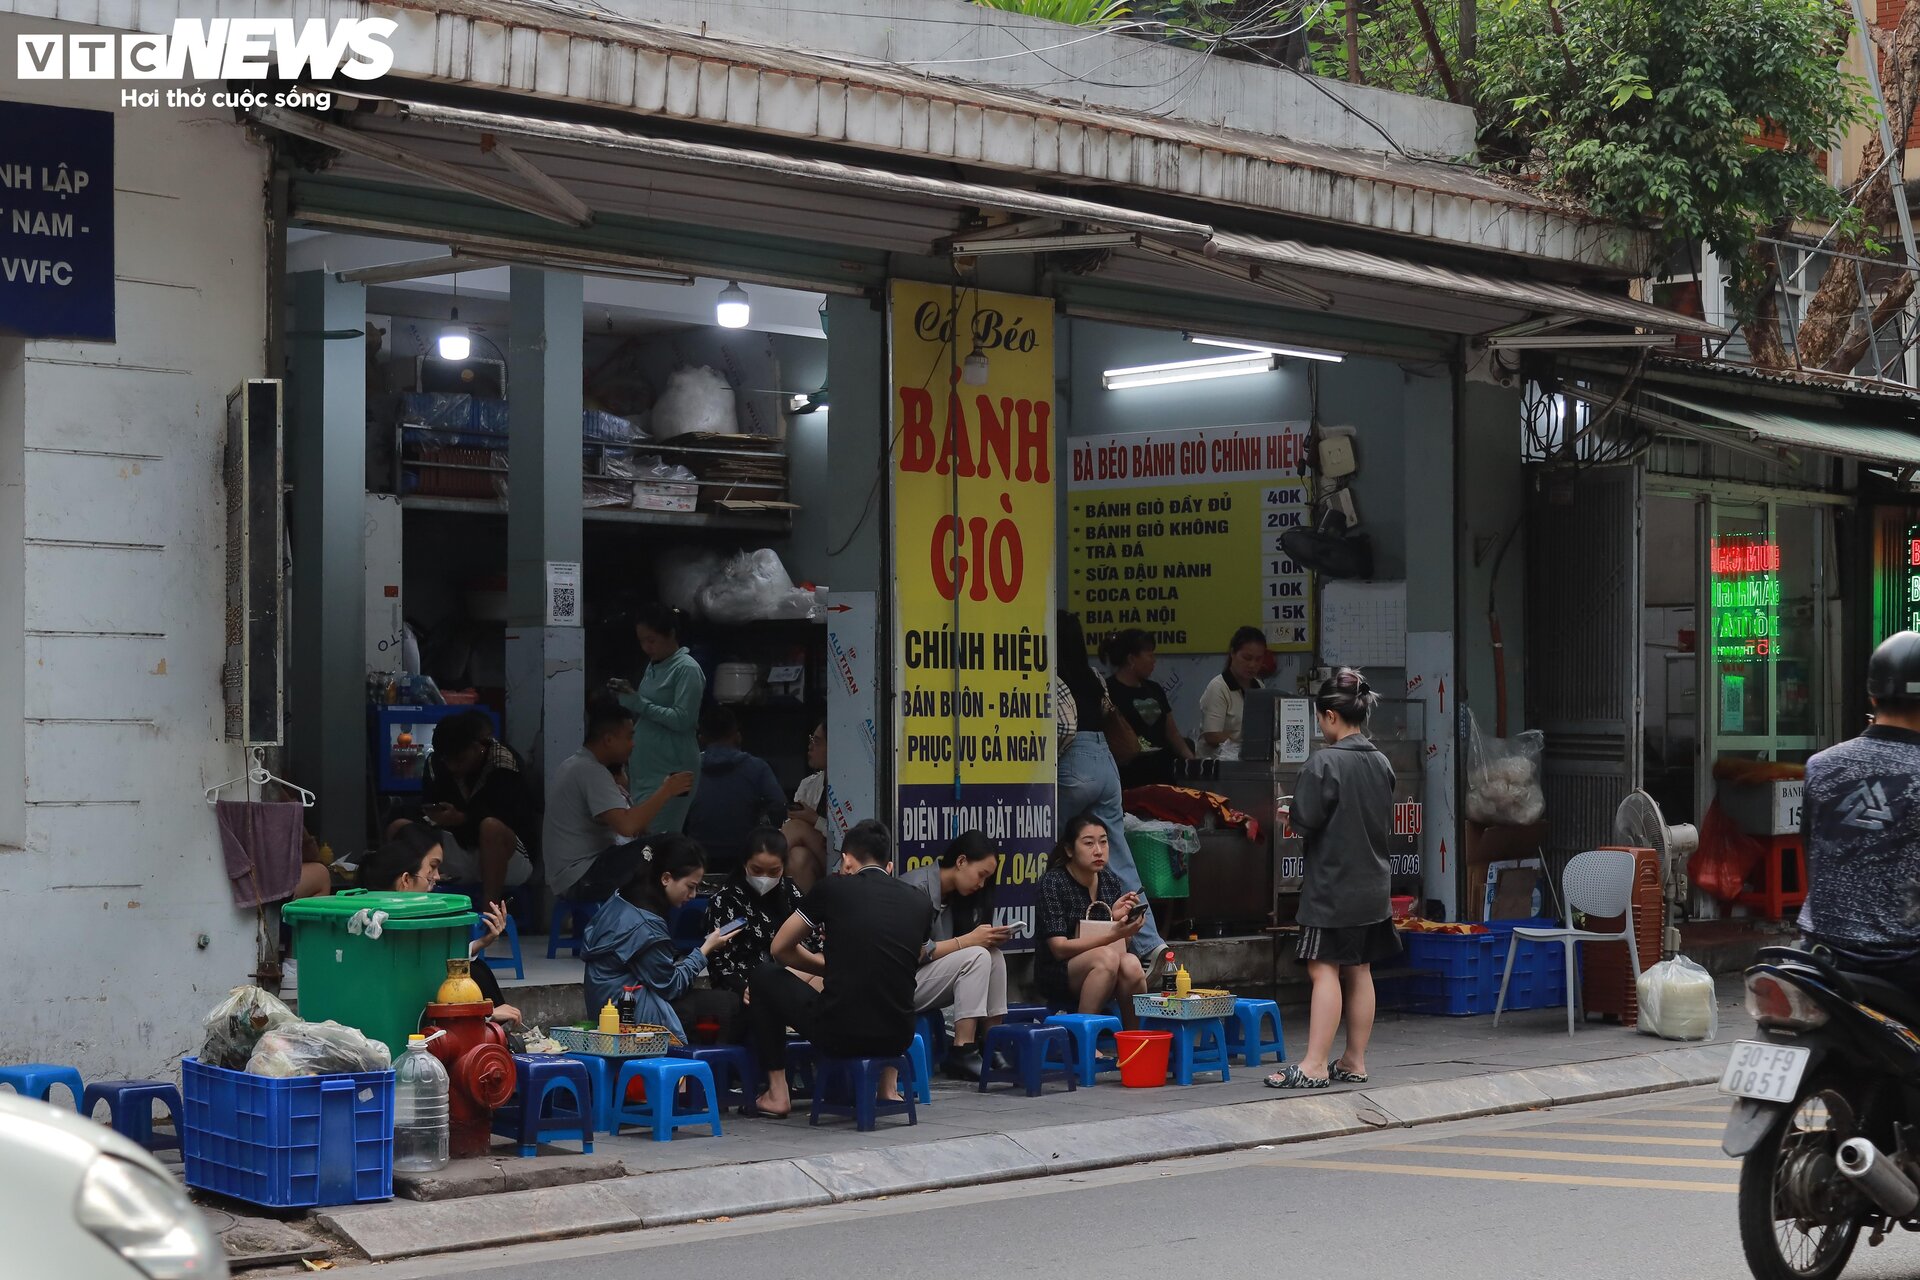 Hà Nội chuyển rét, quán ăn vỉa hè đông nghẹt khách từ sáng sớm đến đêm khuya - Ảnh 5.